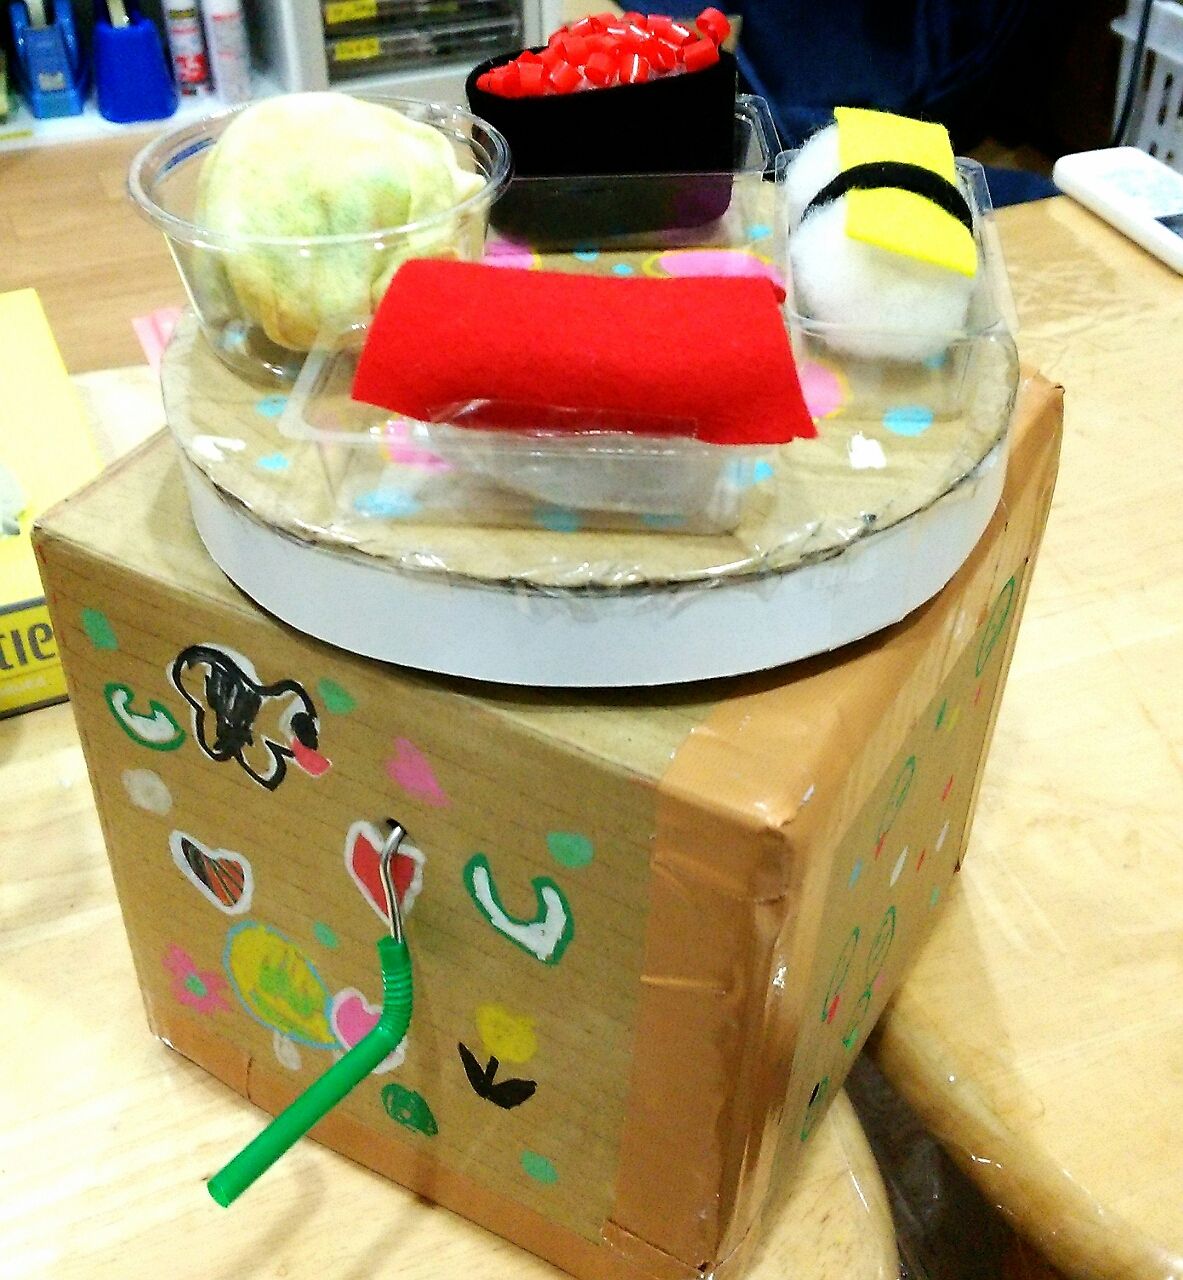 夏休み親子で作るカラクリ工作 クルクル回転寿司の作り方 こころアトリエ1ぴきネコ